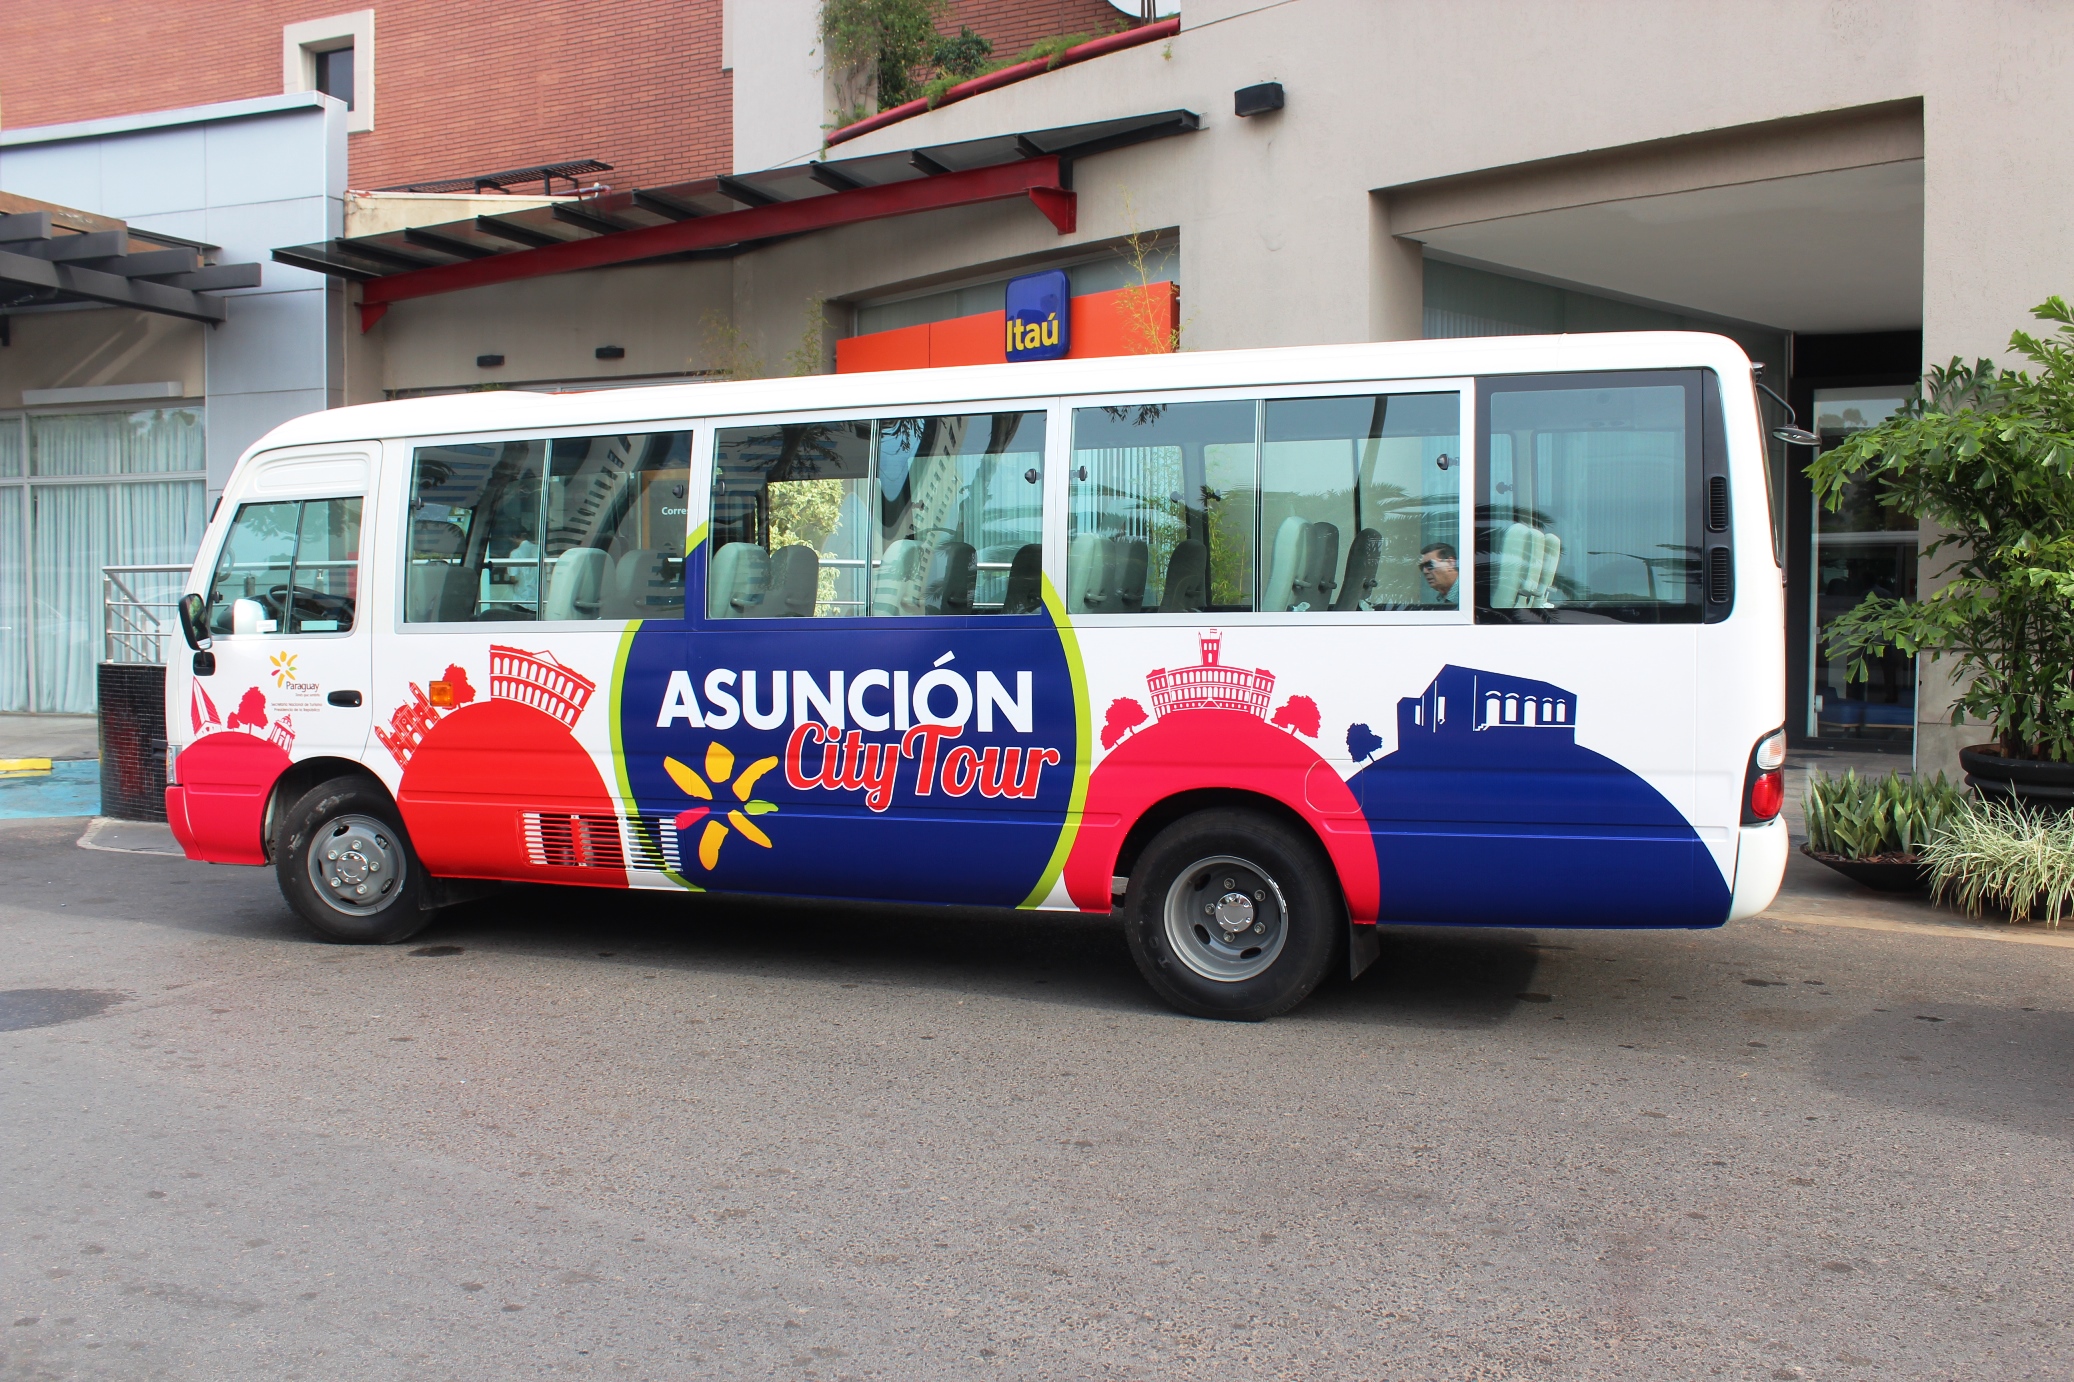 Asunción City Tour rendirá homenaje a la Patria y a la madre